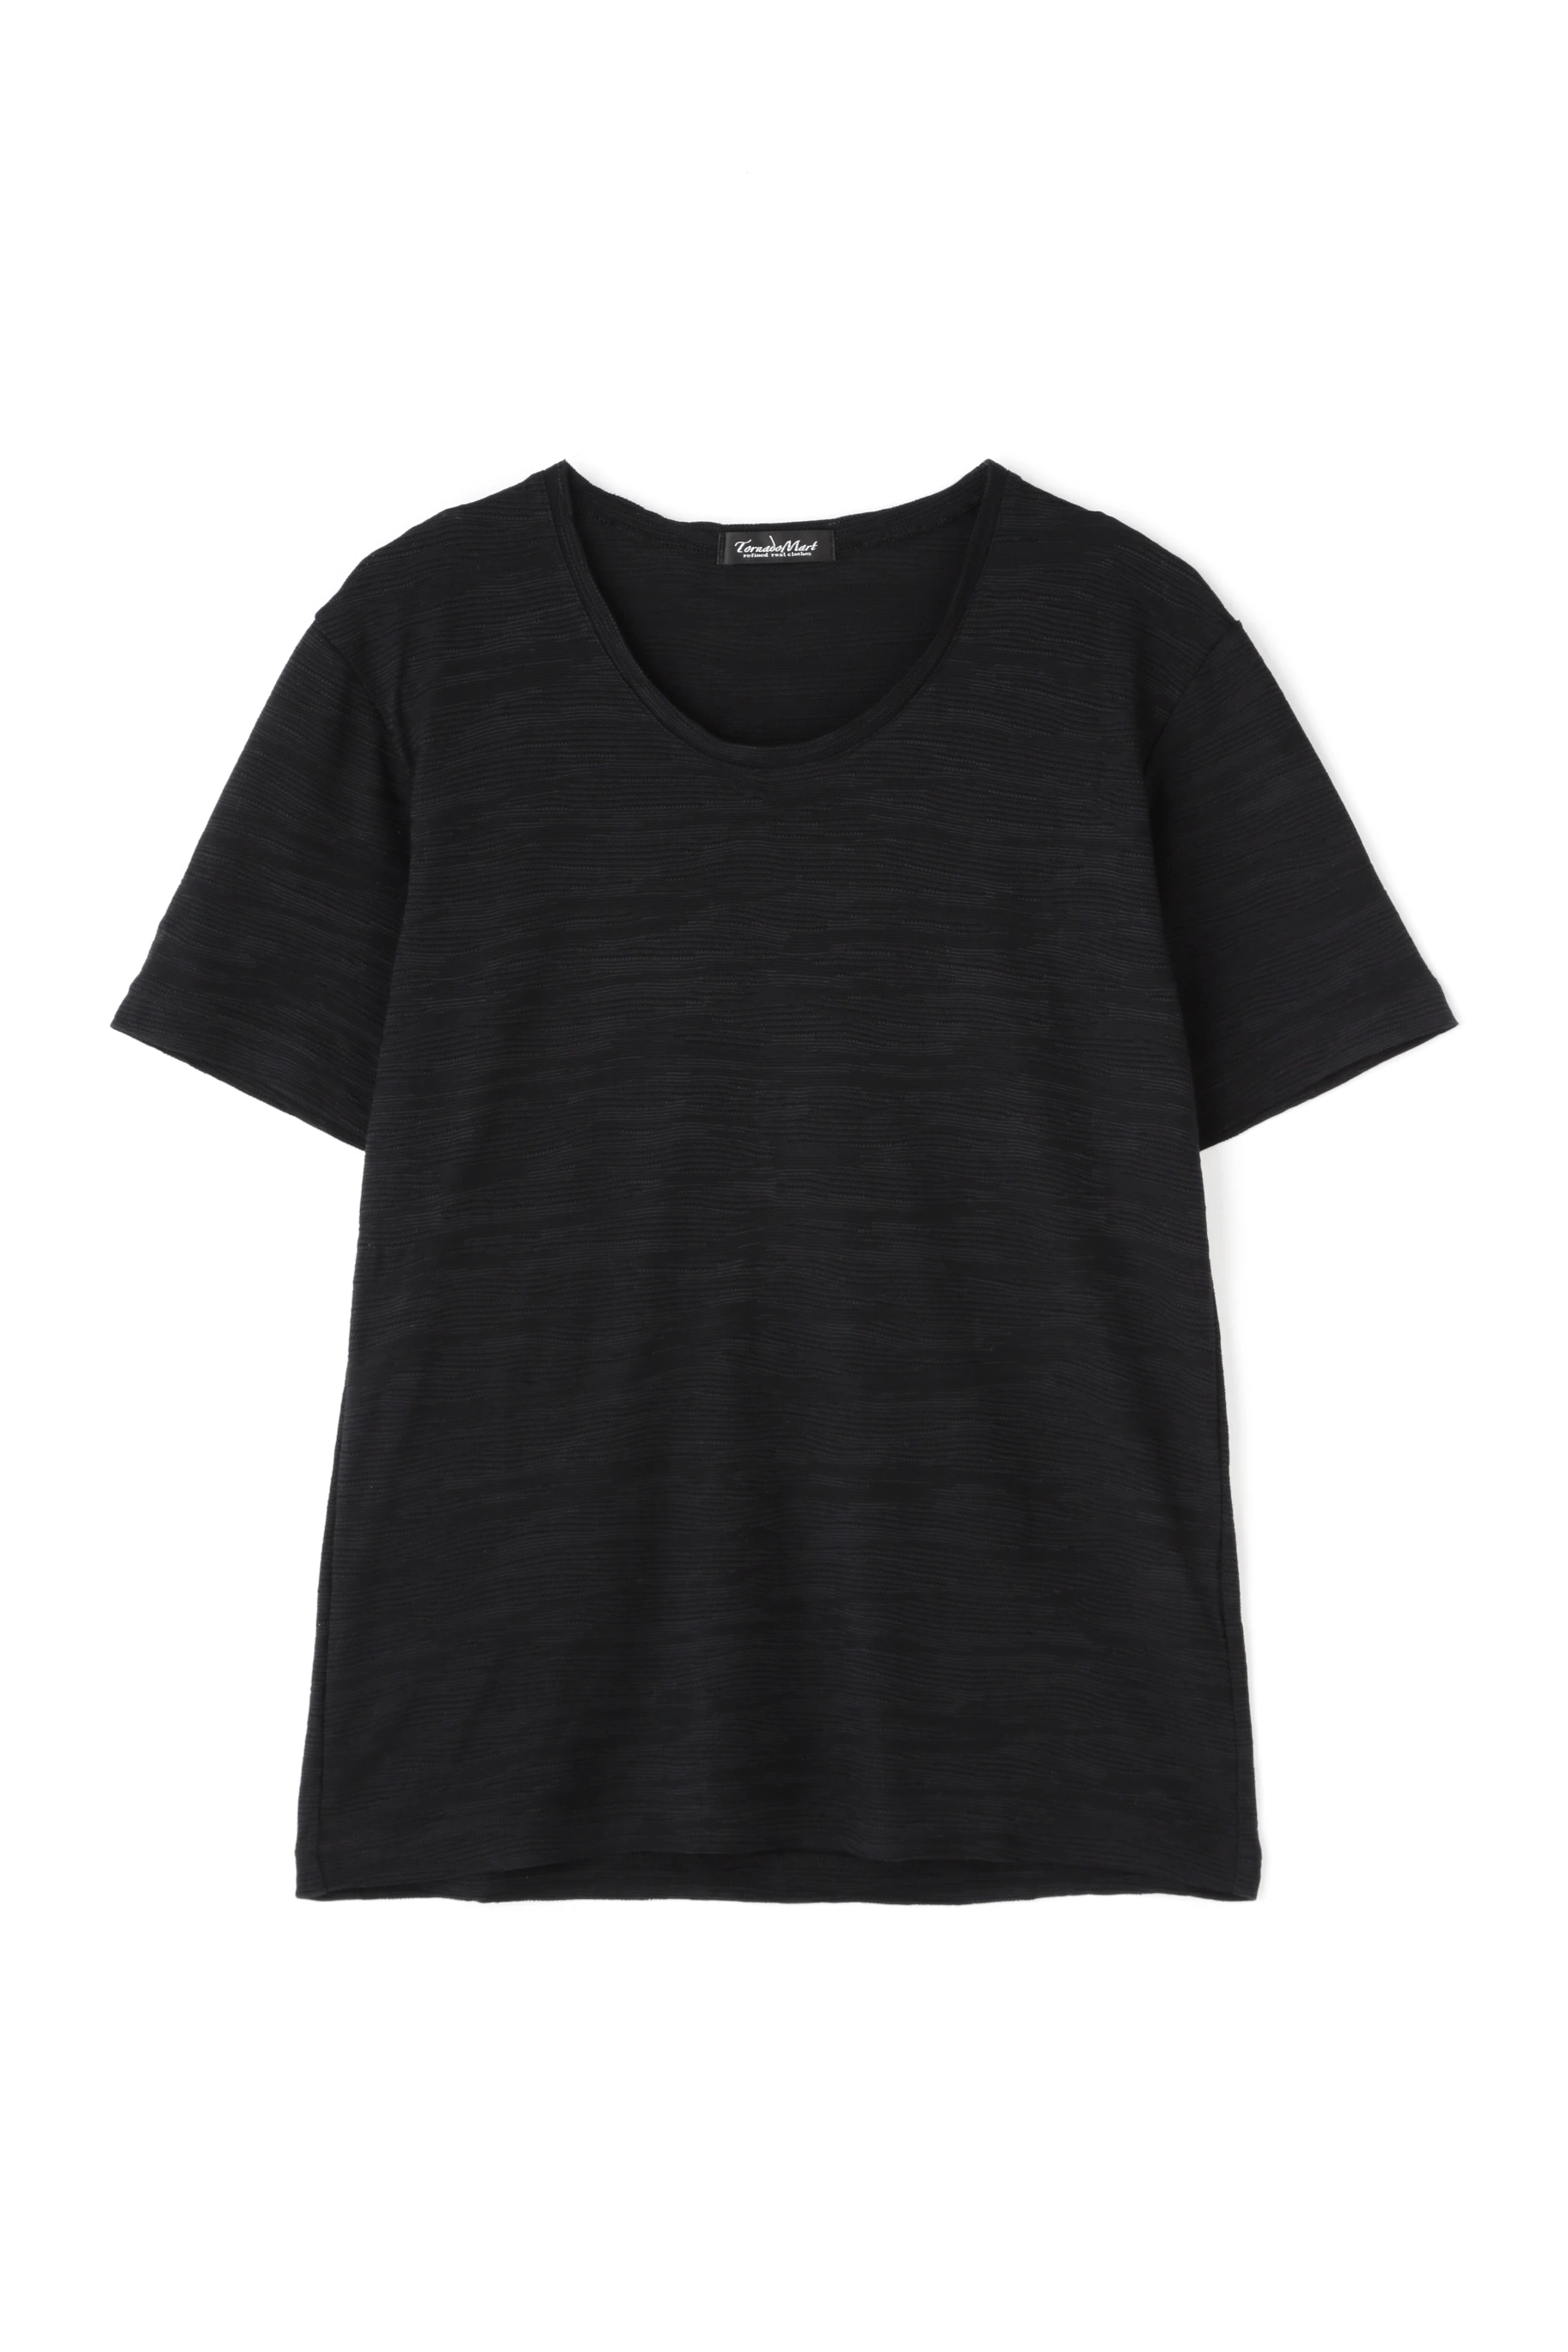 【ブラック】TORNADO MART∴リンクス迷彩Tシャツ